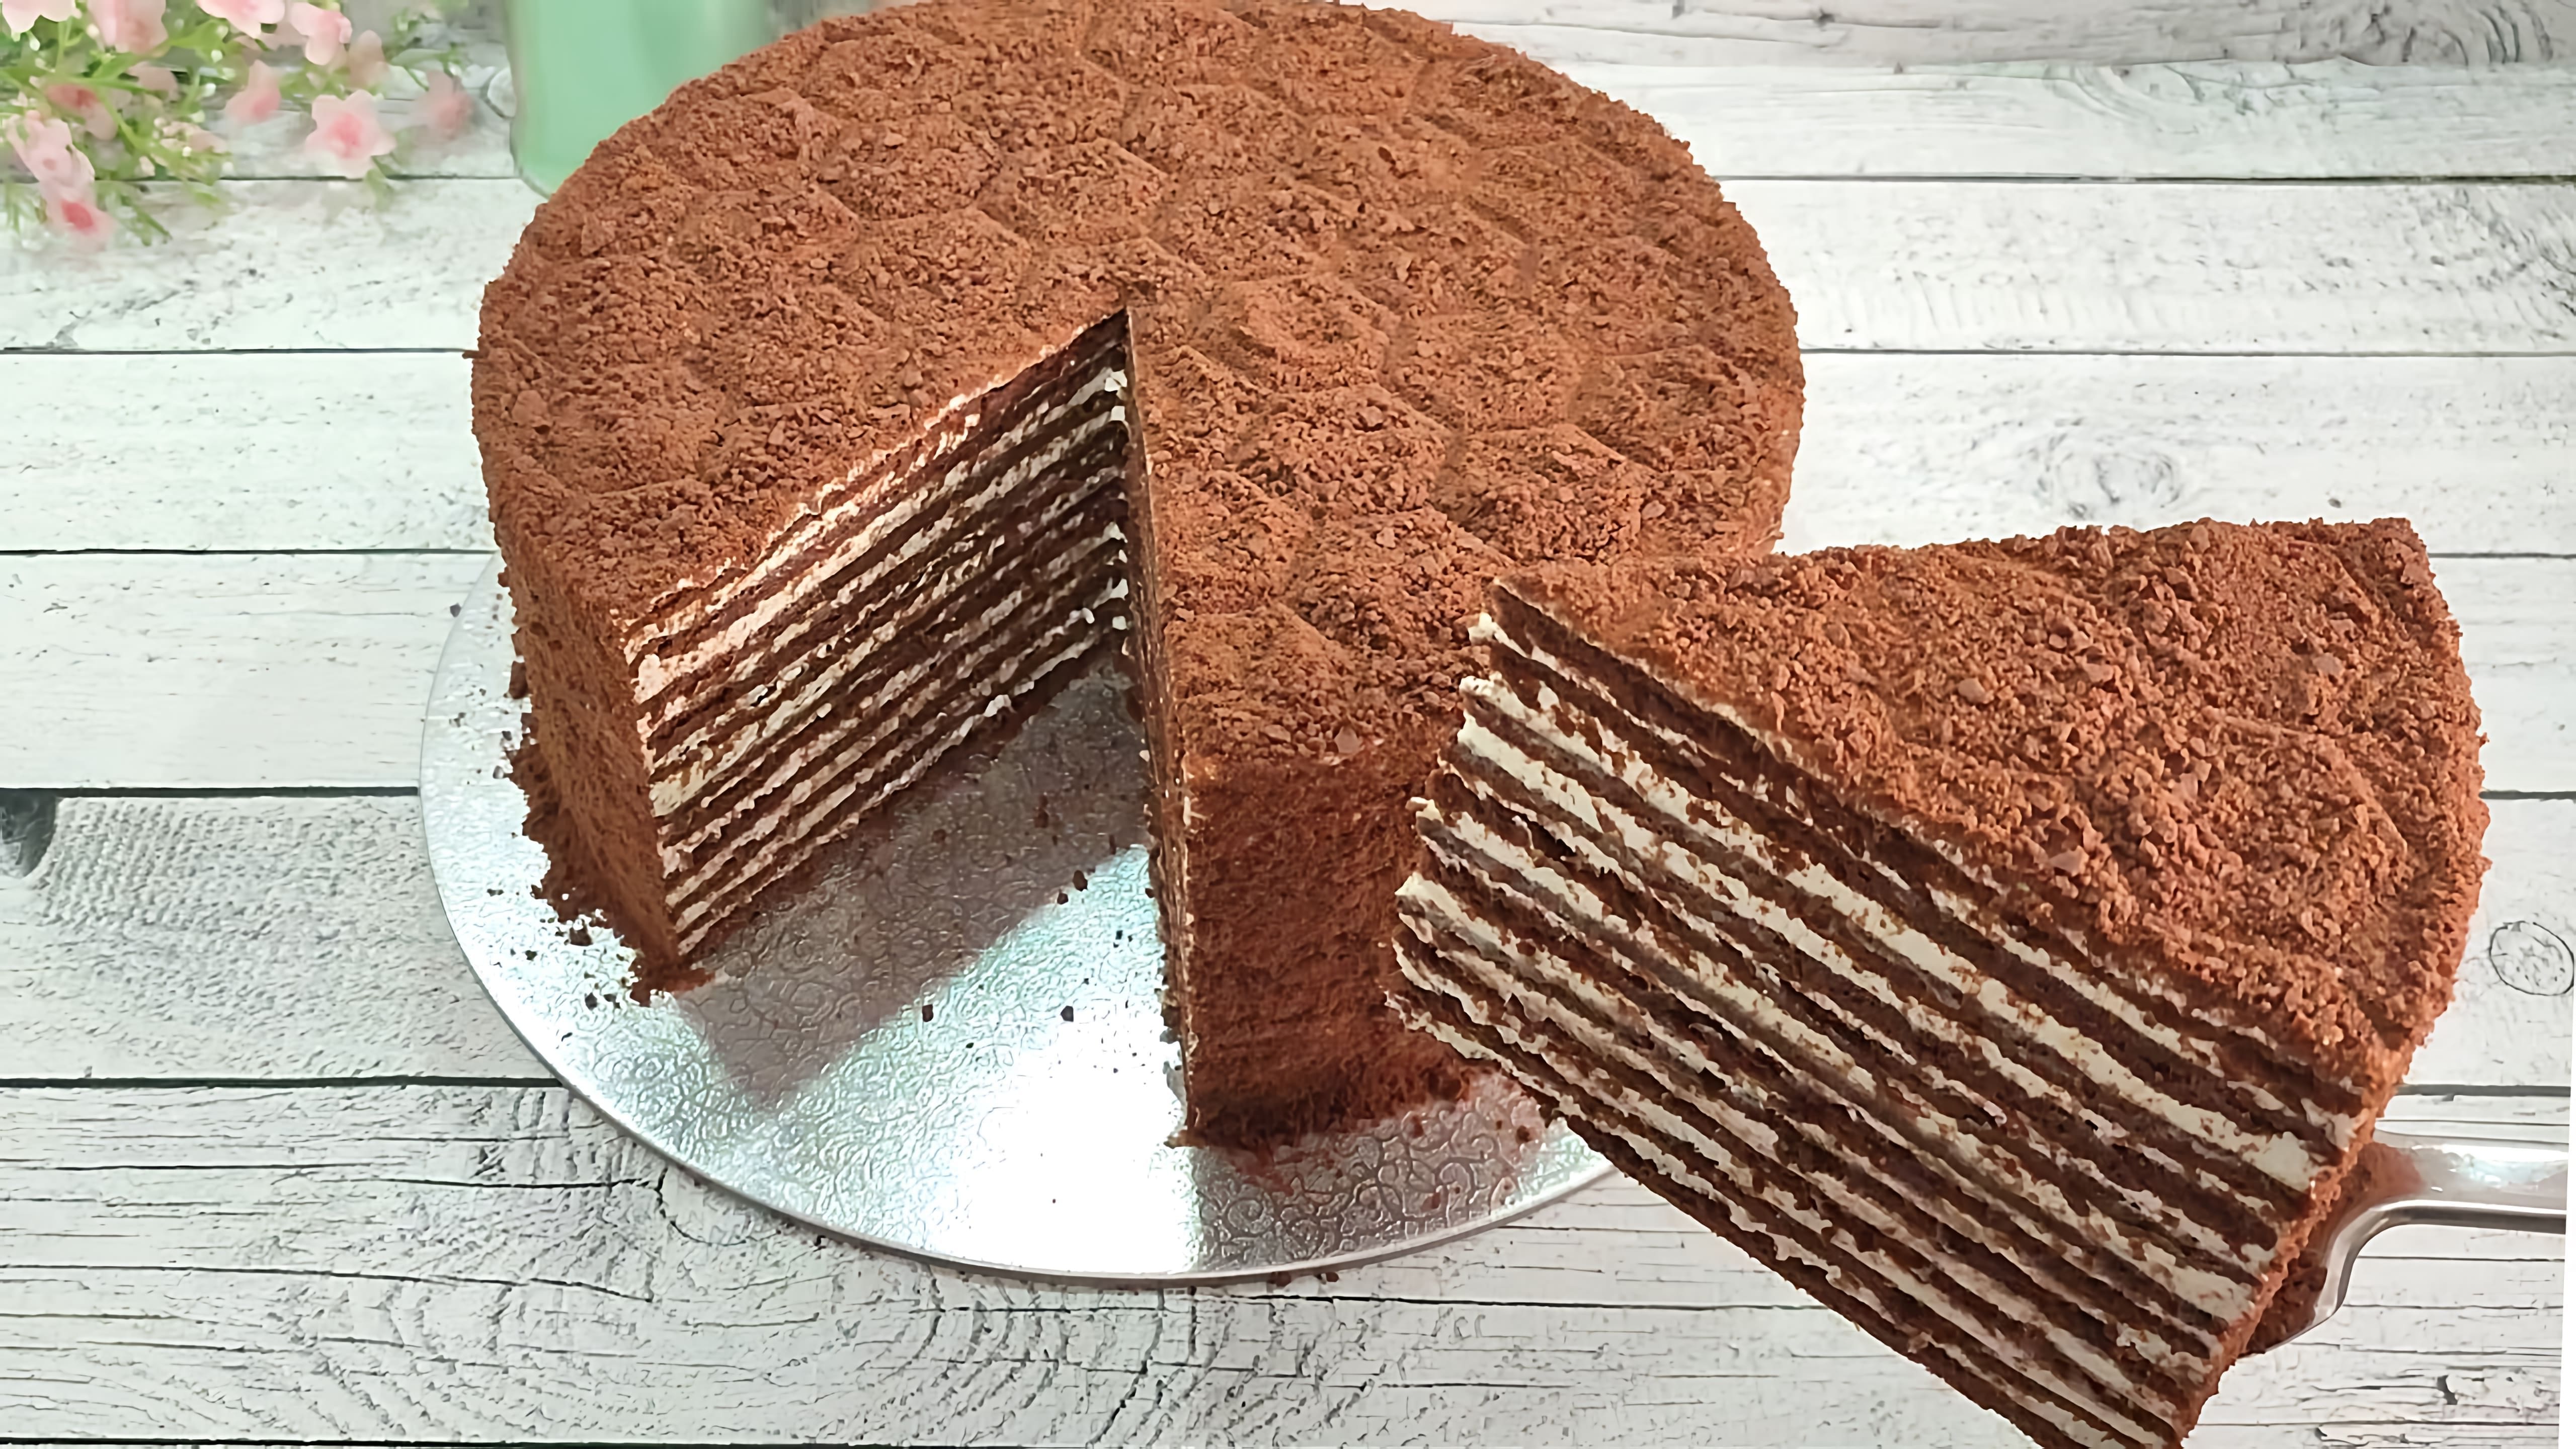 Видео рецепт шоколадного торта Медовик или Спартак, который очень вкусный и тает во рту